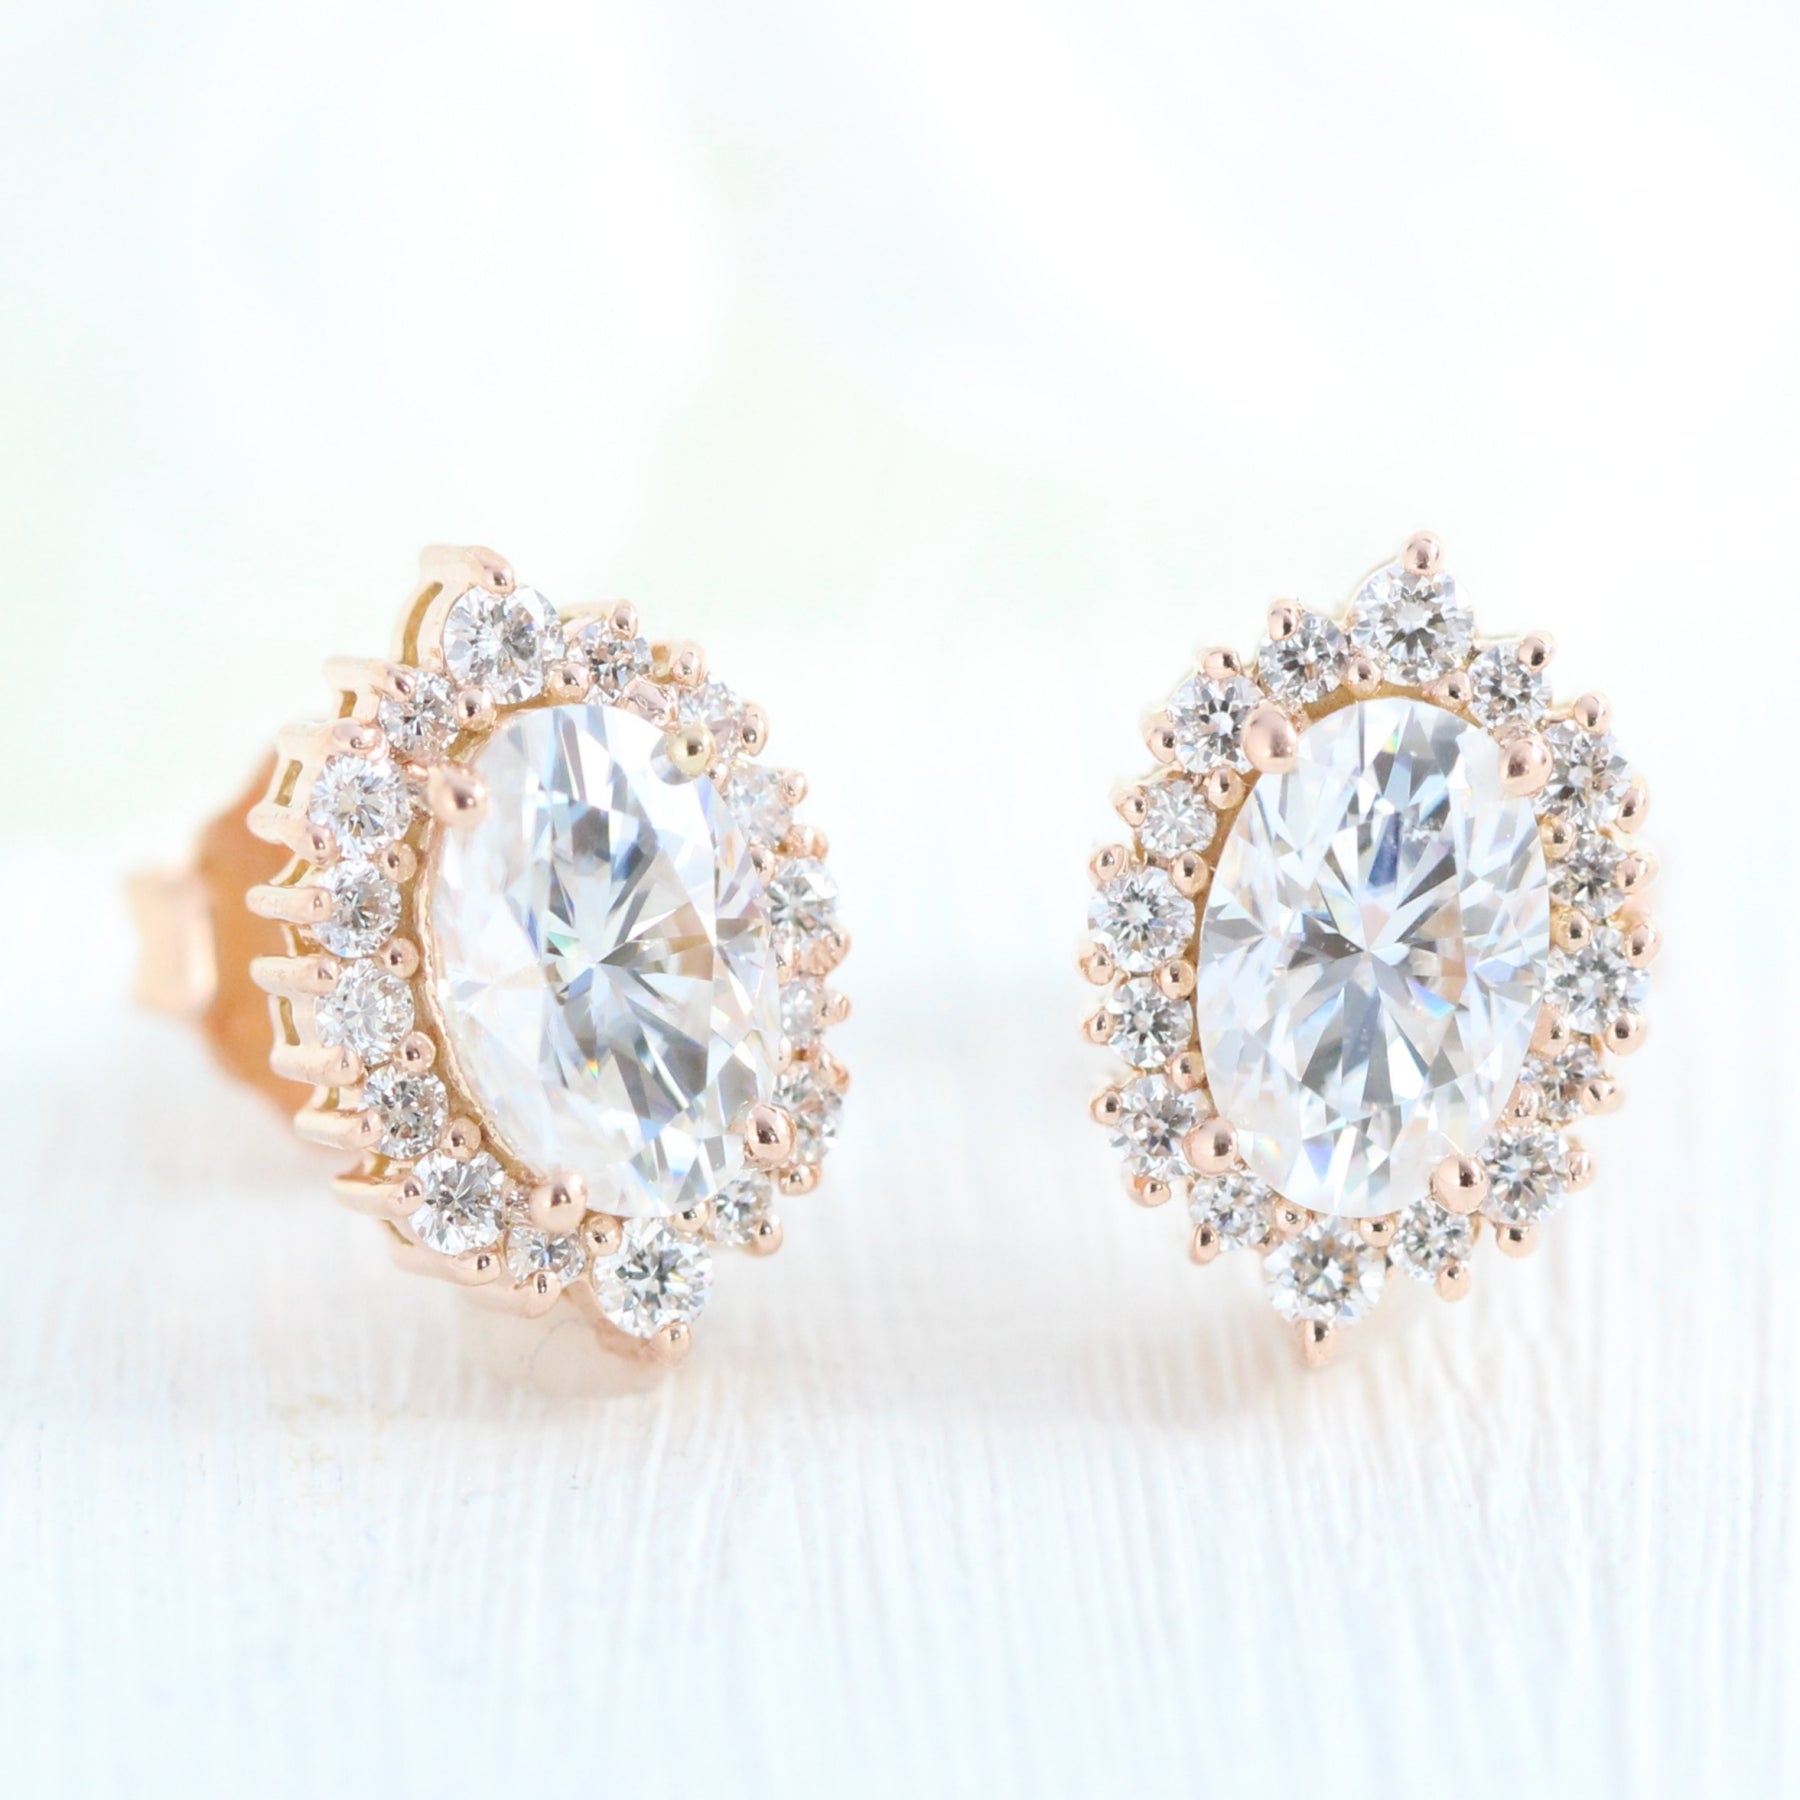 3 Stone Diamond Earrings, 14K Gold 0.24 Ct Diamond Earrings